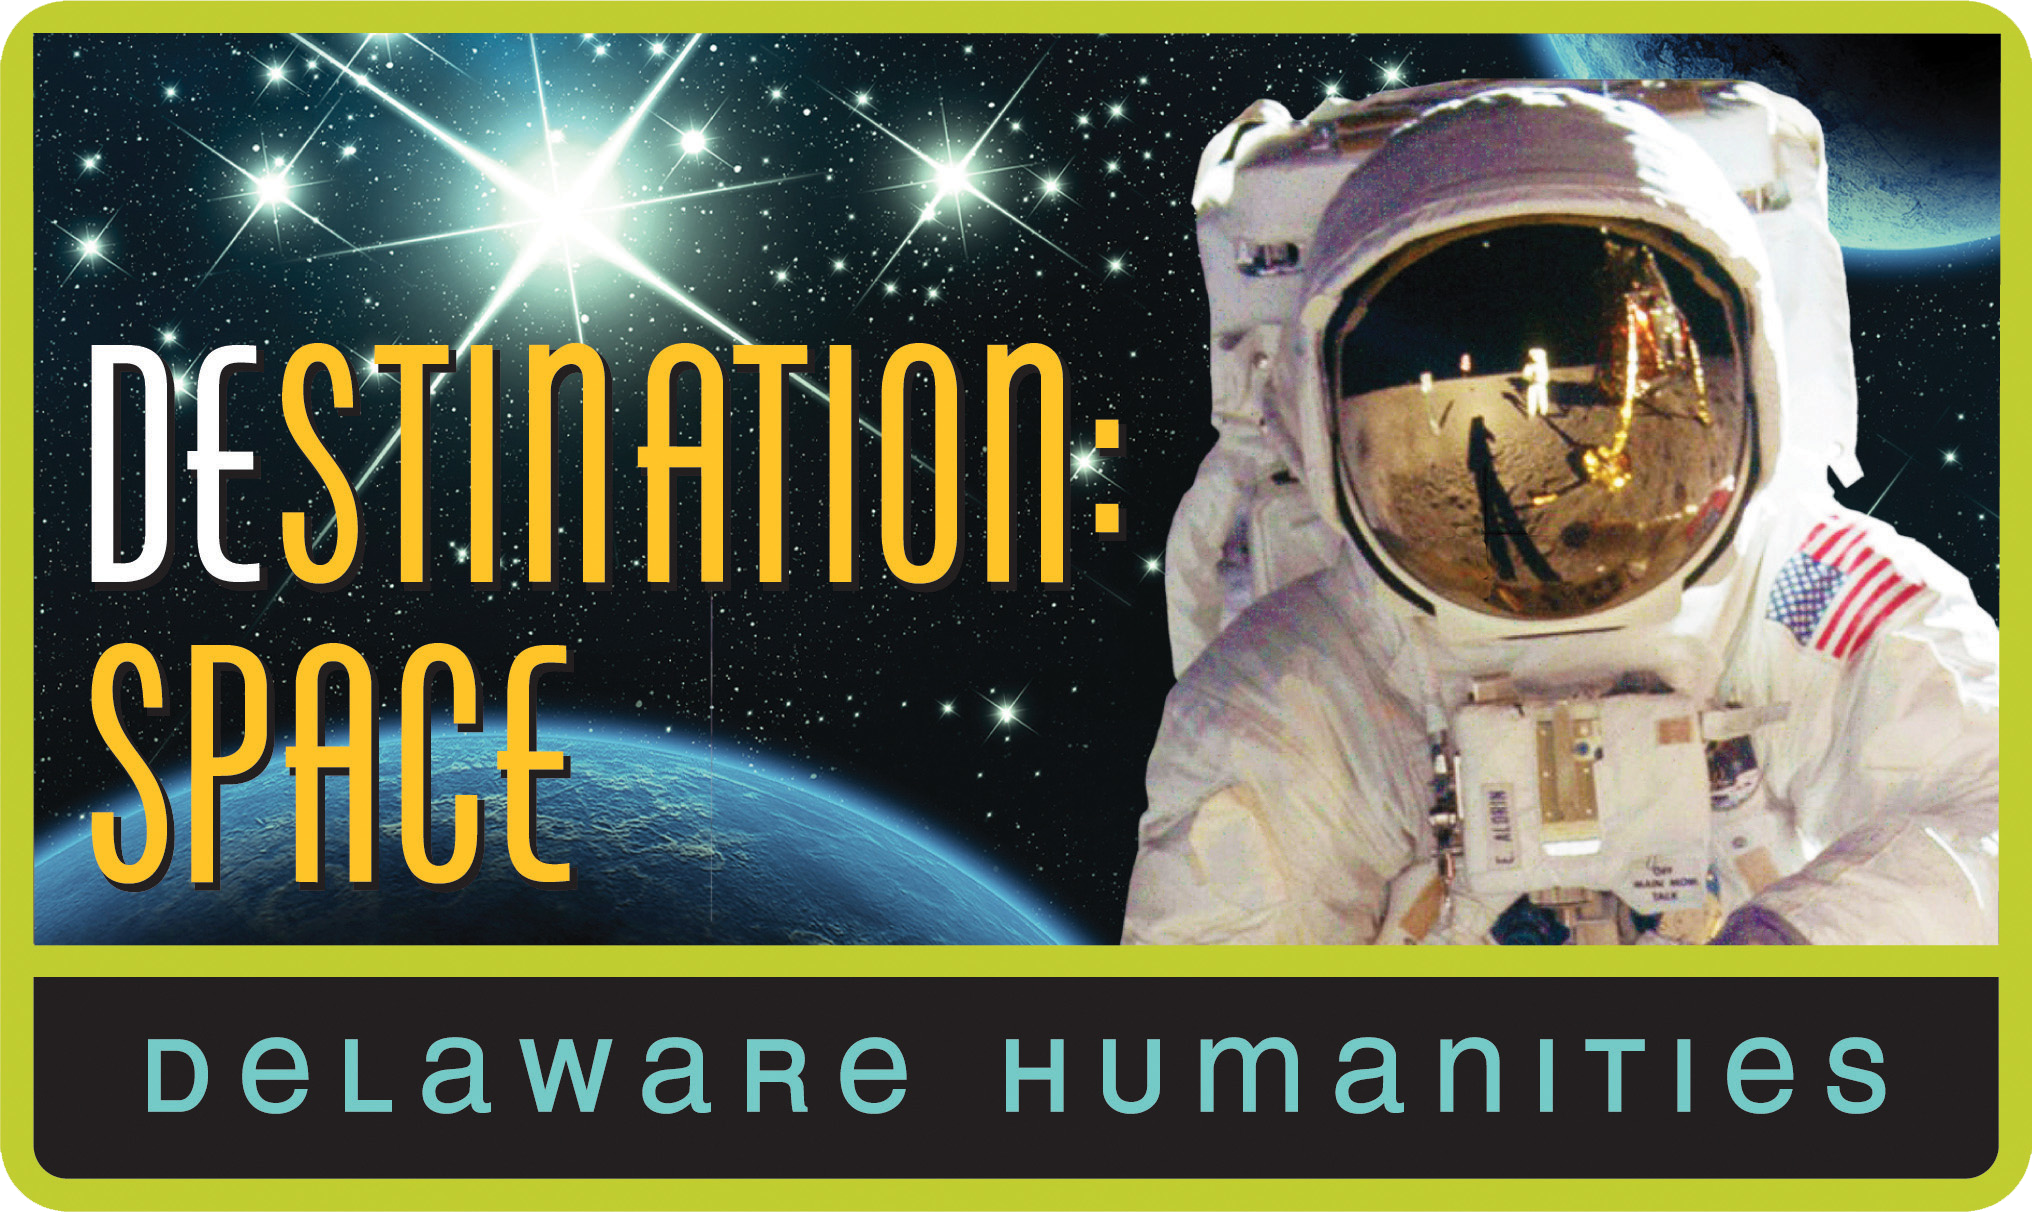 DEstination: Space Exhibition Promotional Image